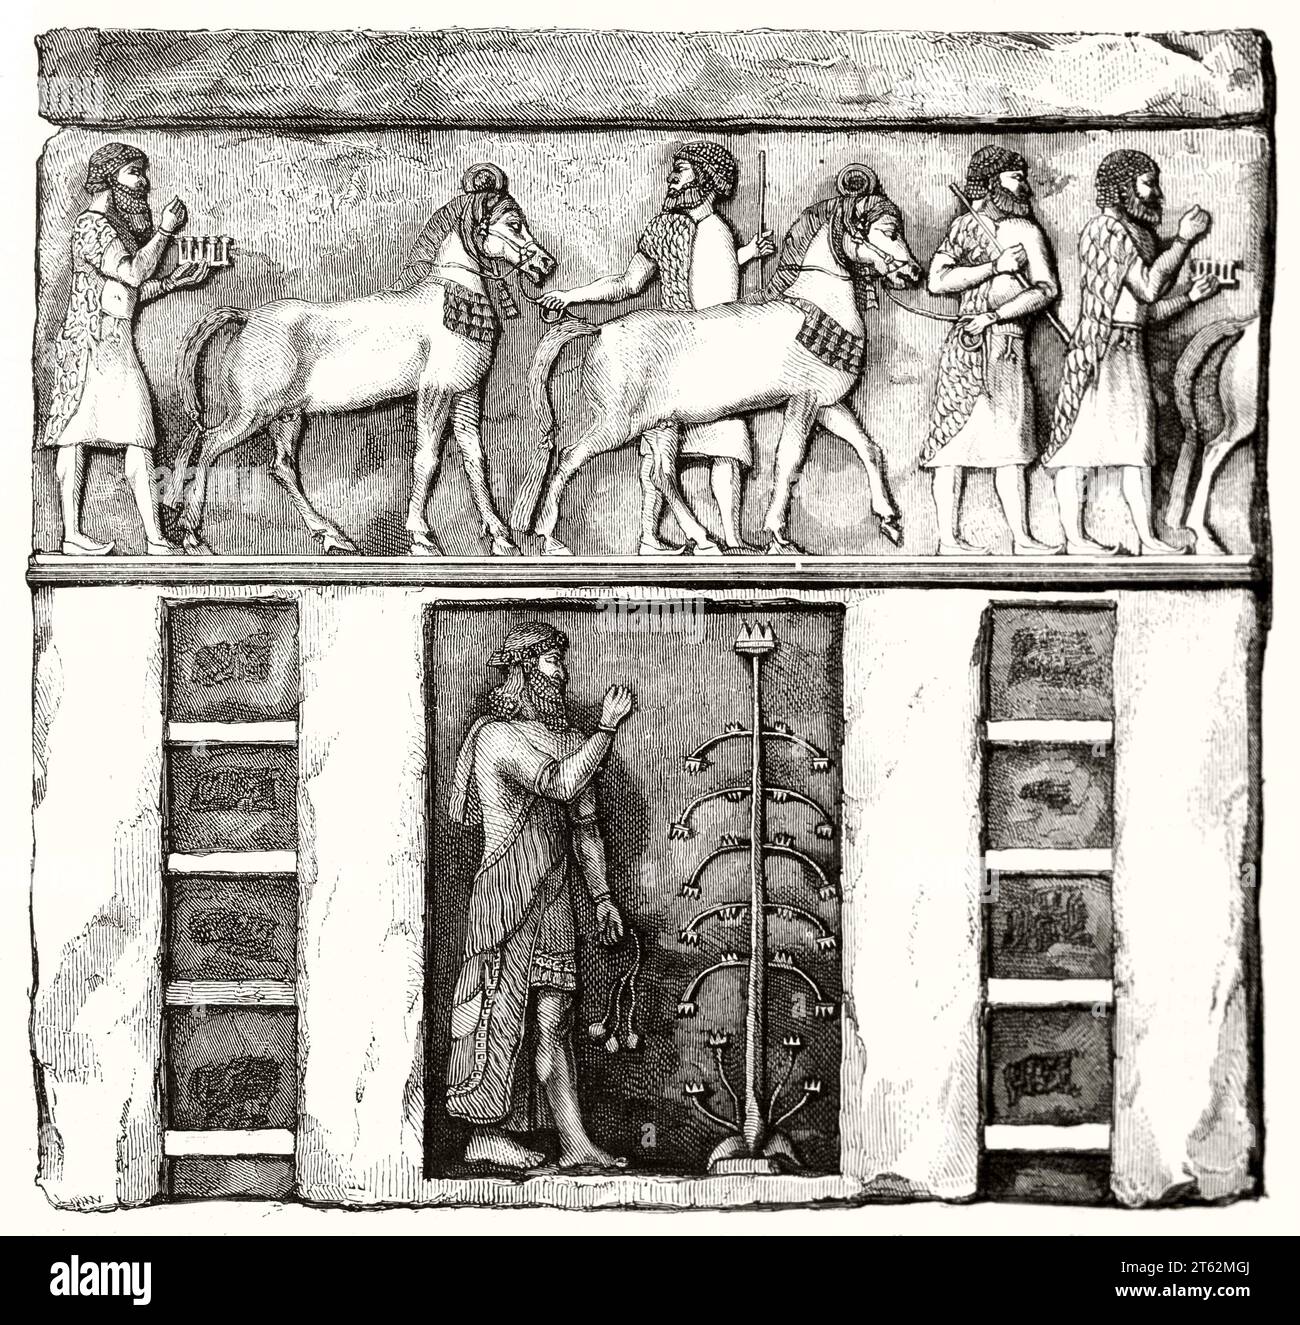 Ancienne reproduction gravée de bas-relief assyrien conservée au musée du Louvre. Par Marvy et Gauchard, publ. Sur magasin pittoresque, Paris, 1849 Banque D'Images